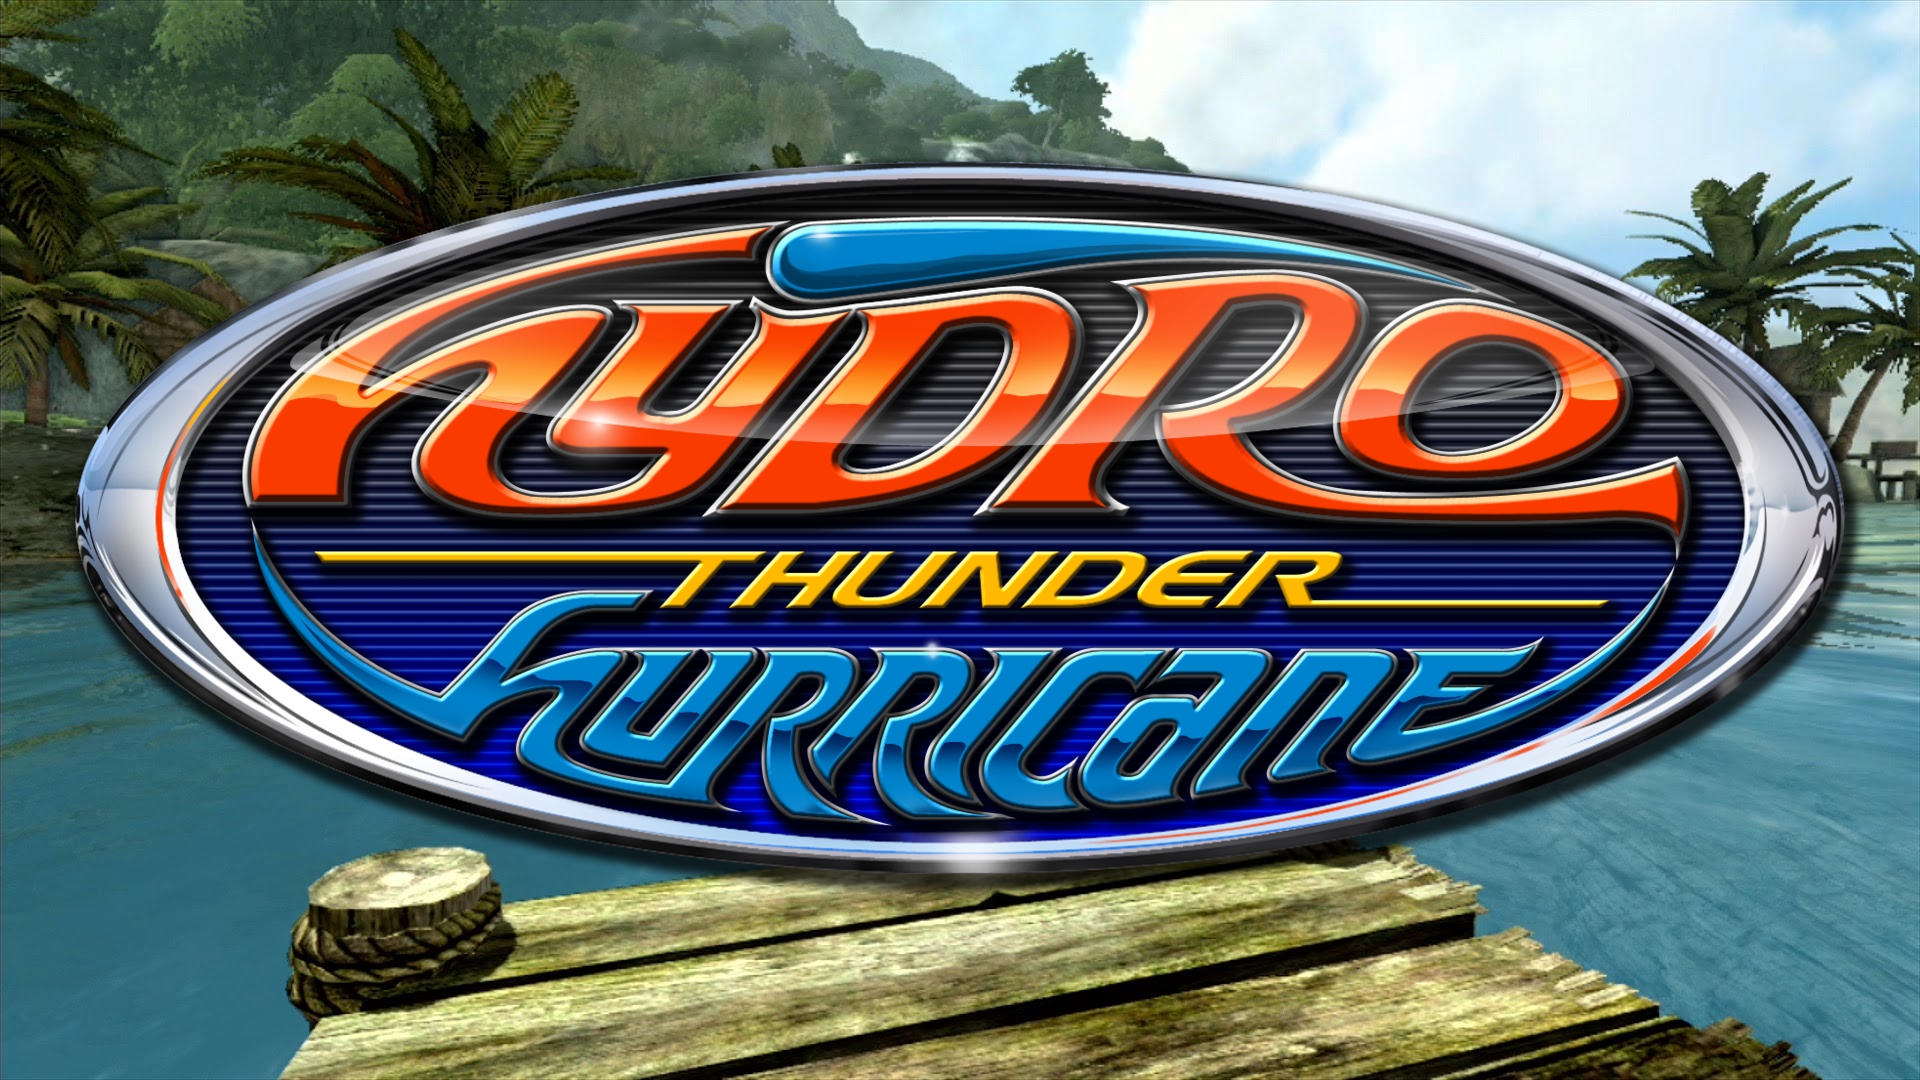 Hydro Thunder: Hurricane